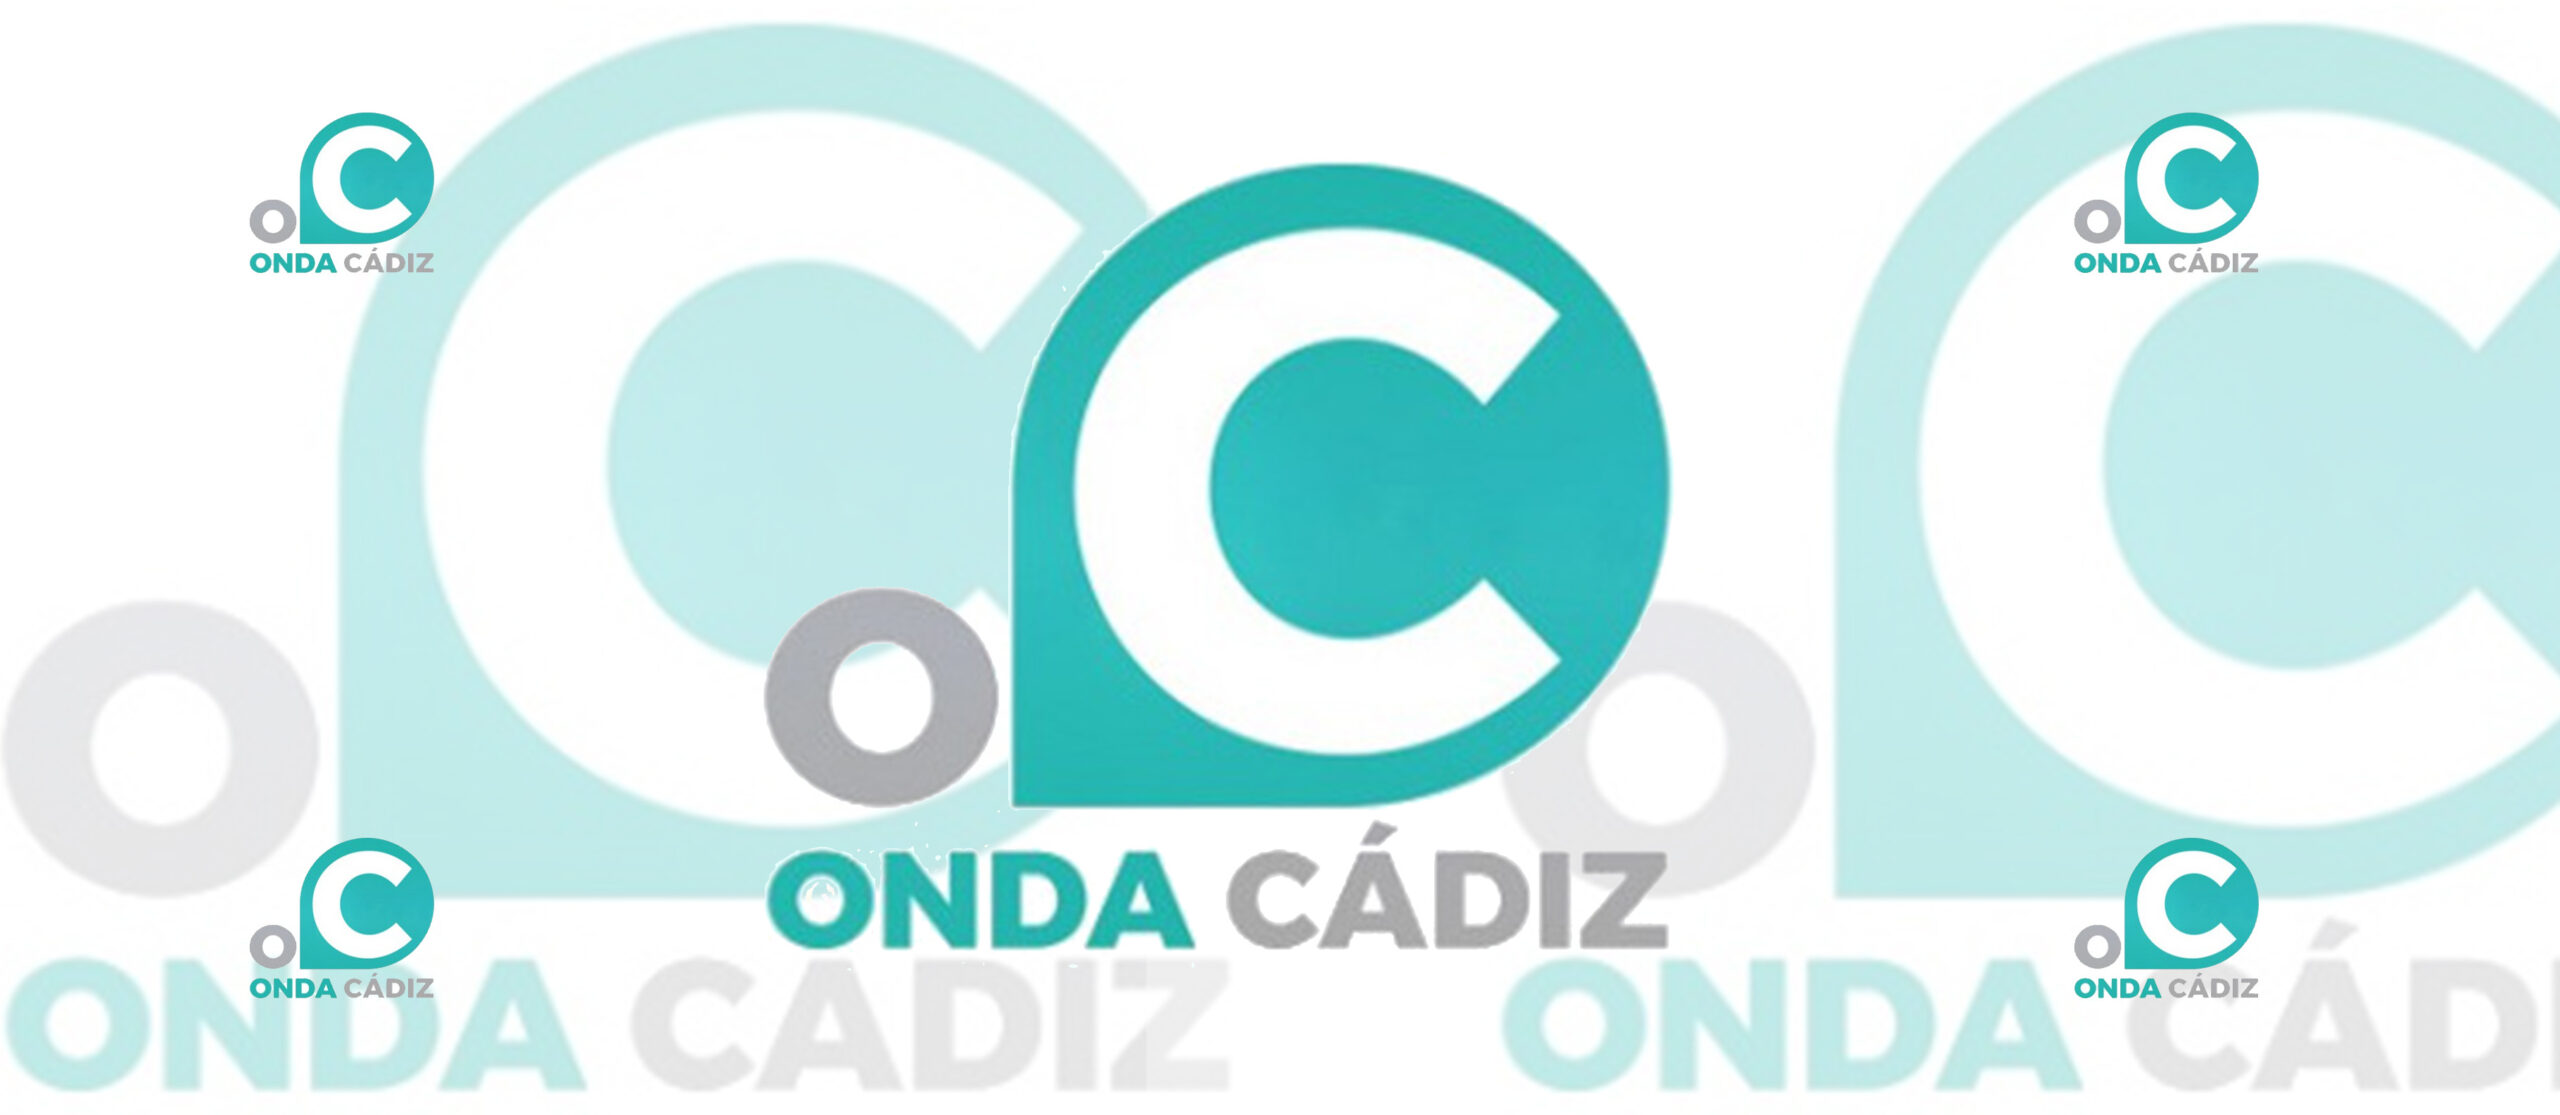 La APC lamenta que Onda Cádiz vuelva a caer en el error de no pedir titulación superior para seleccionar nueva gerencia